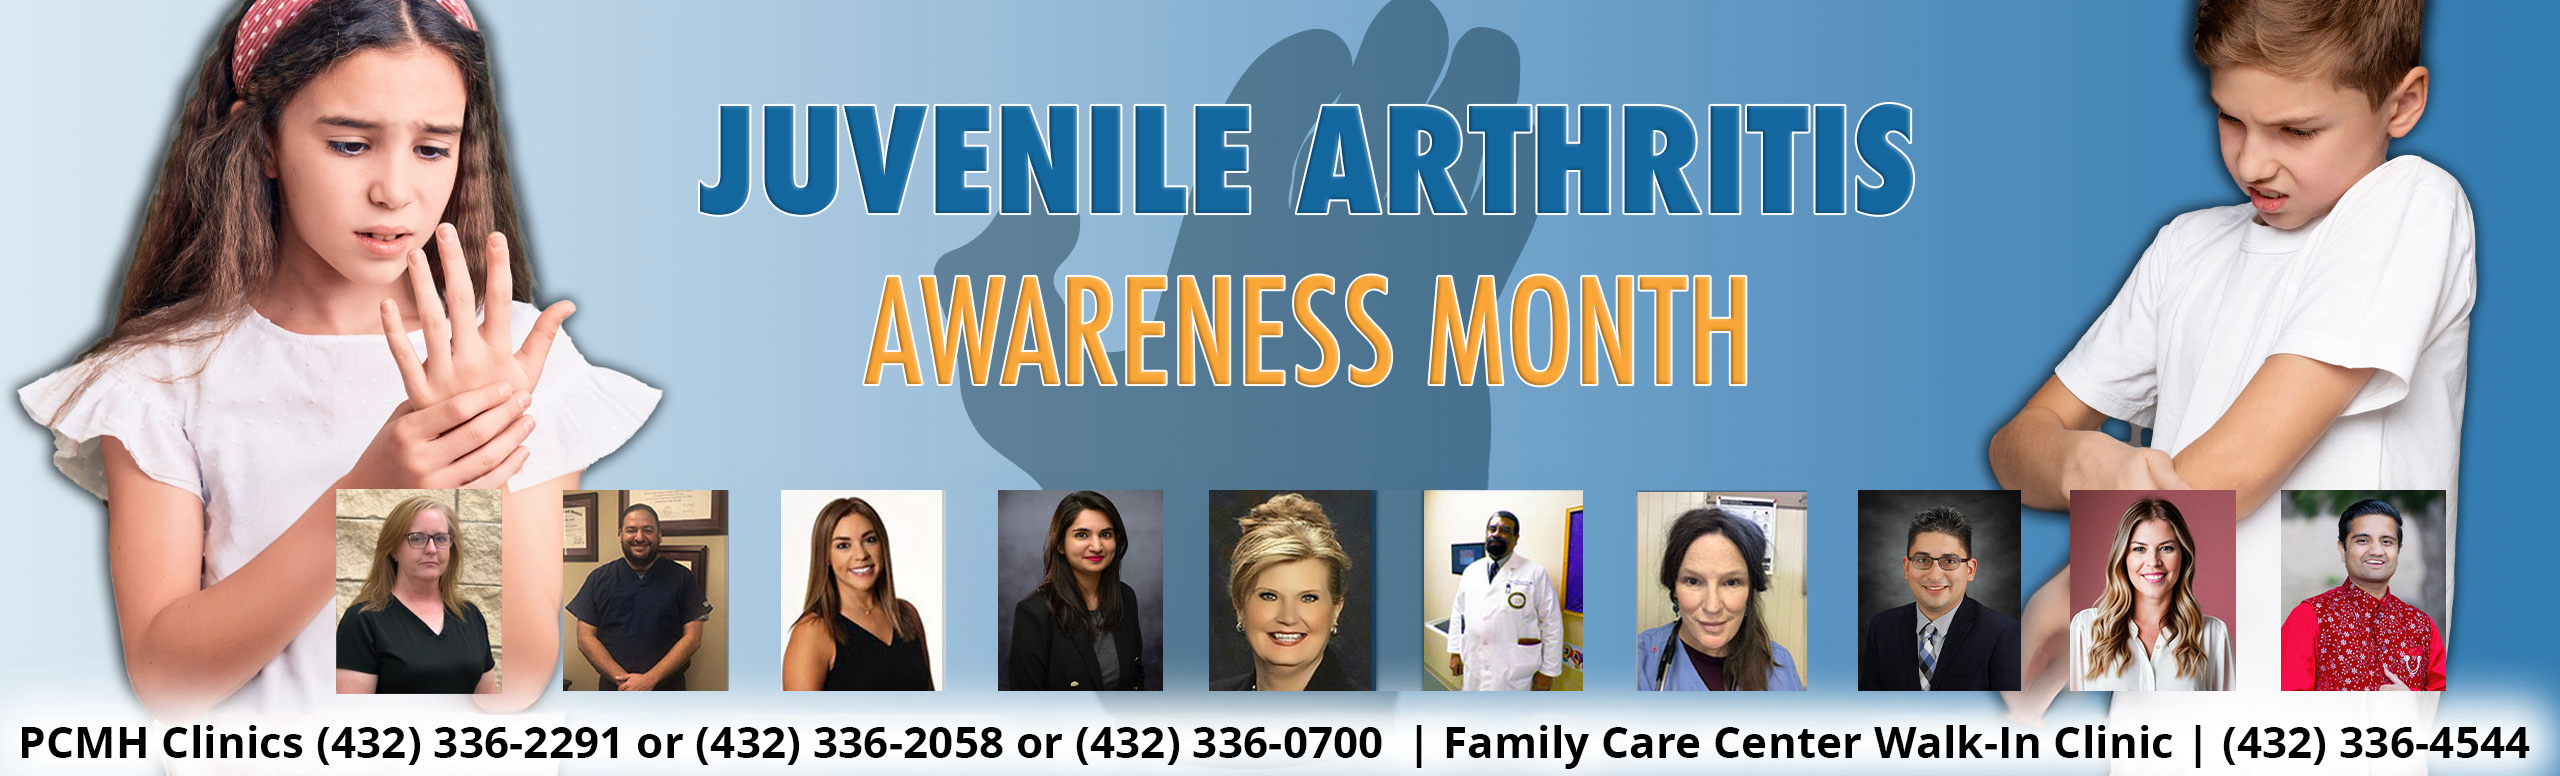 juvenile arthritis Awareness Month